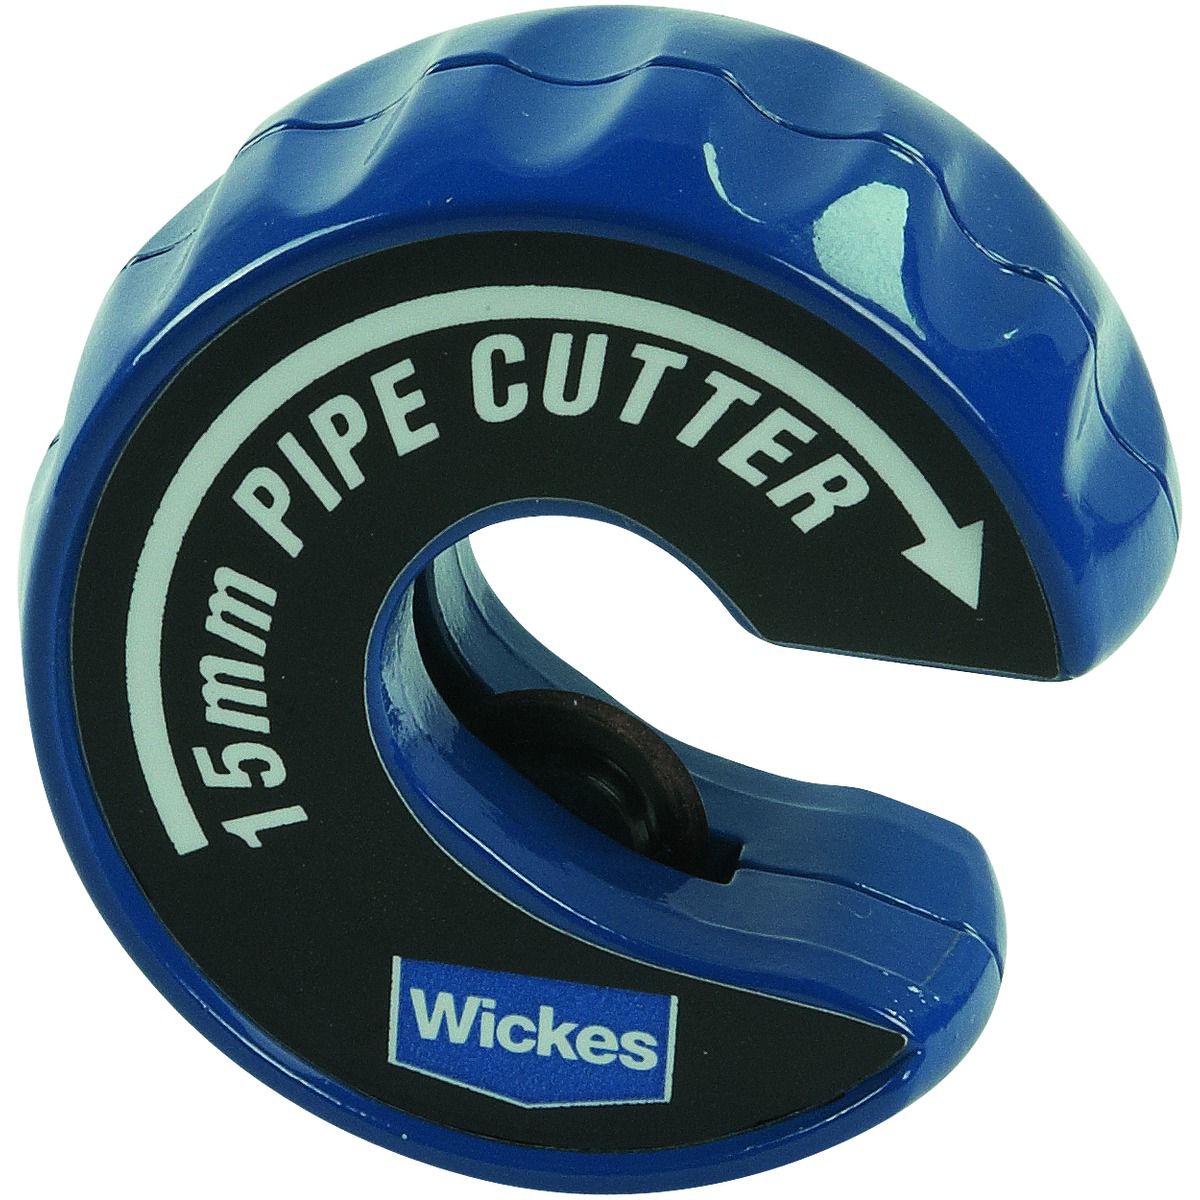 Wickes Auto Copper Pipe Cutter - 15mm